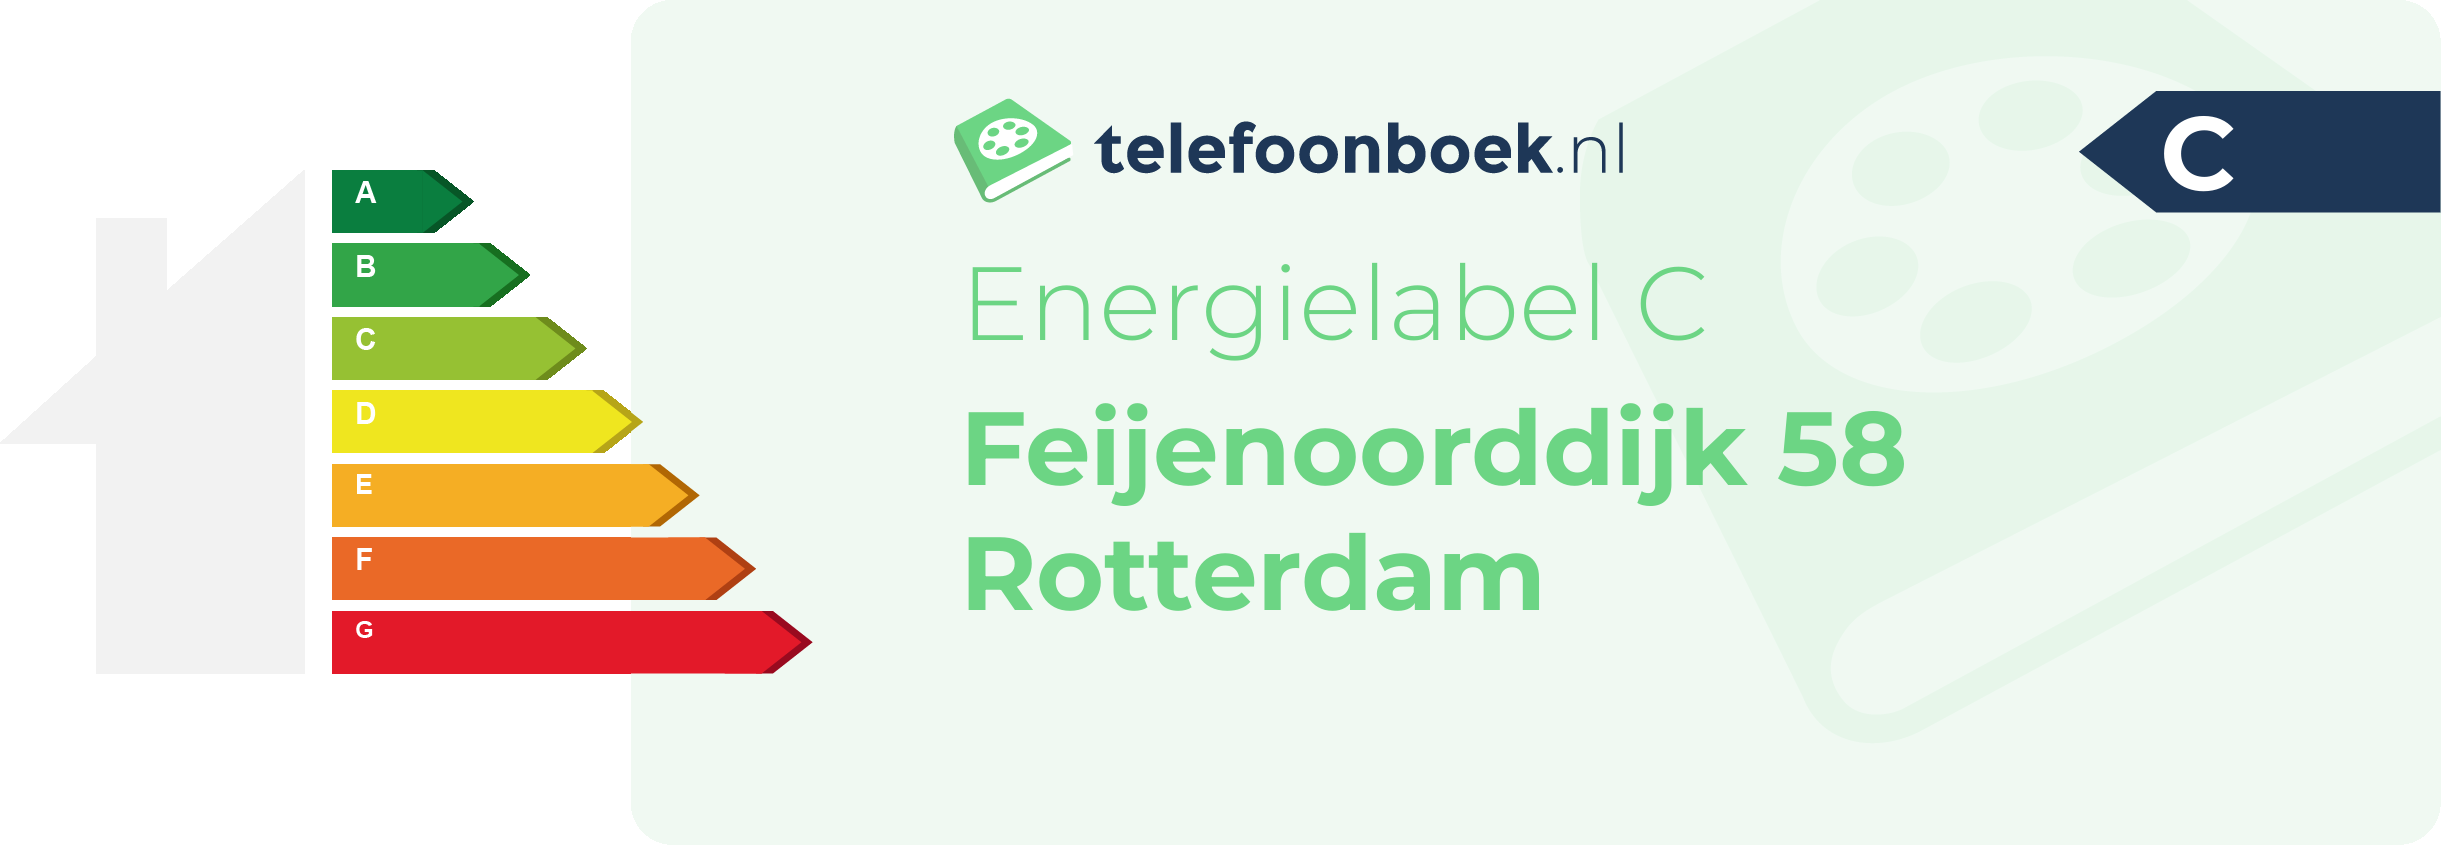 Energielabel Feijenoorddijk 58 Rotterdam